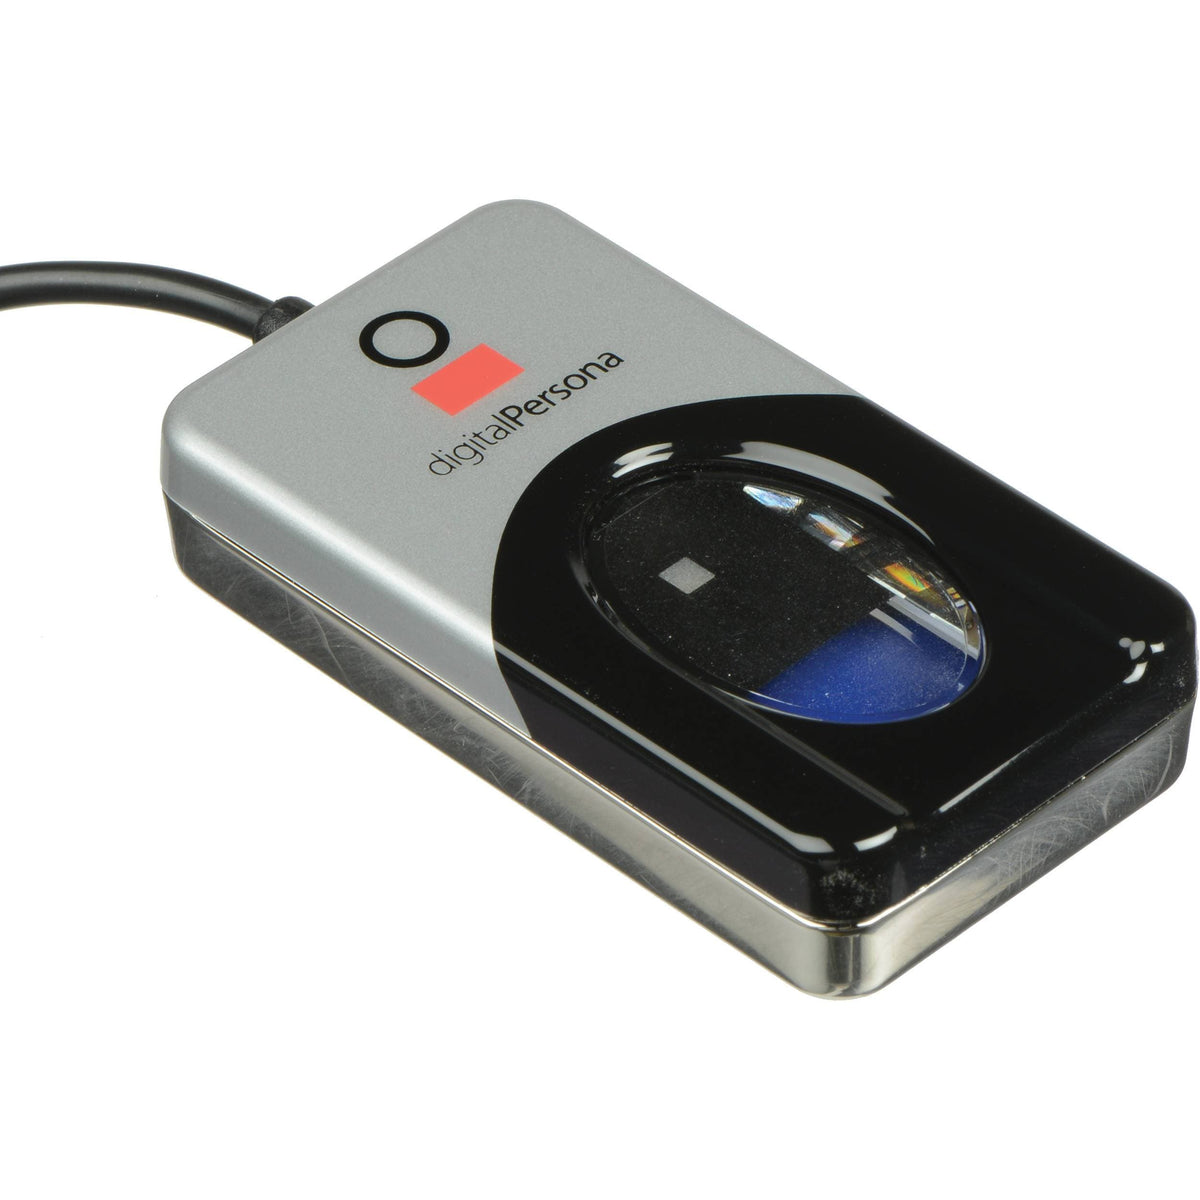 USB Fingerprint Scanner — Australia